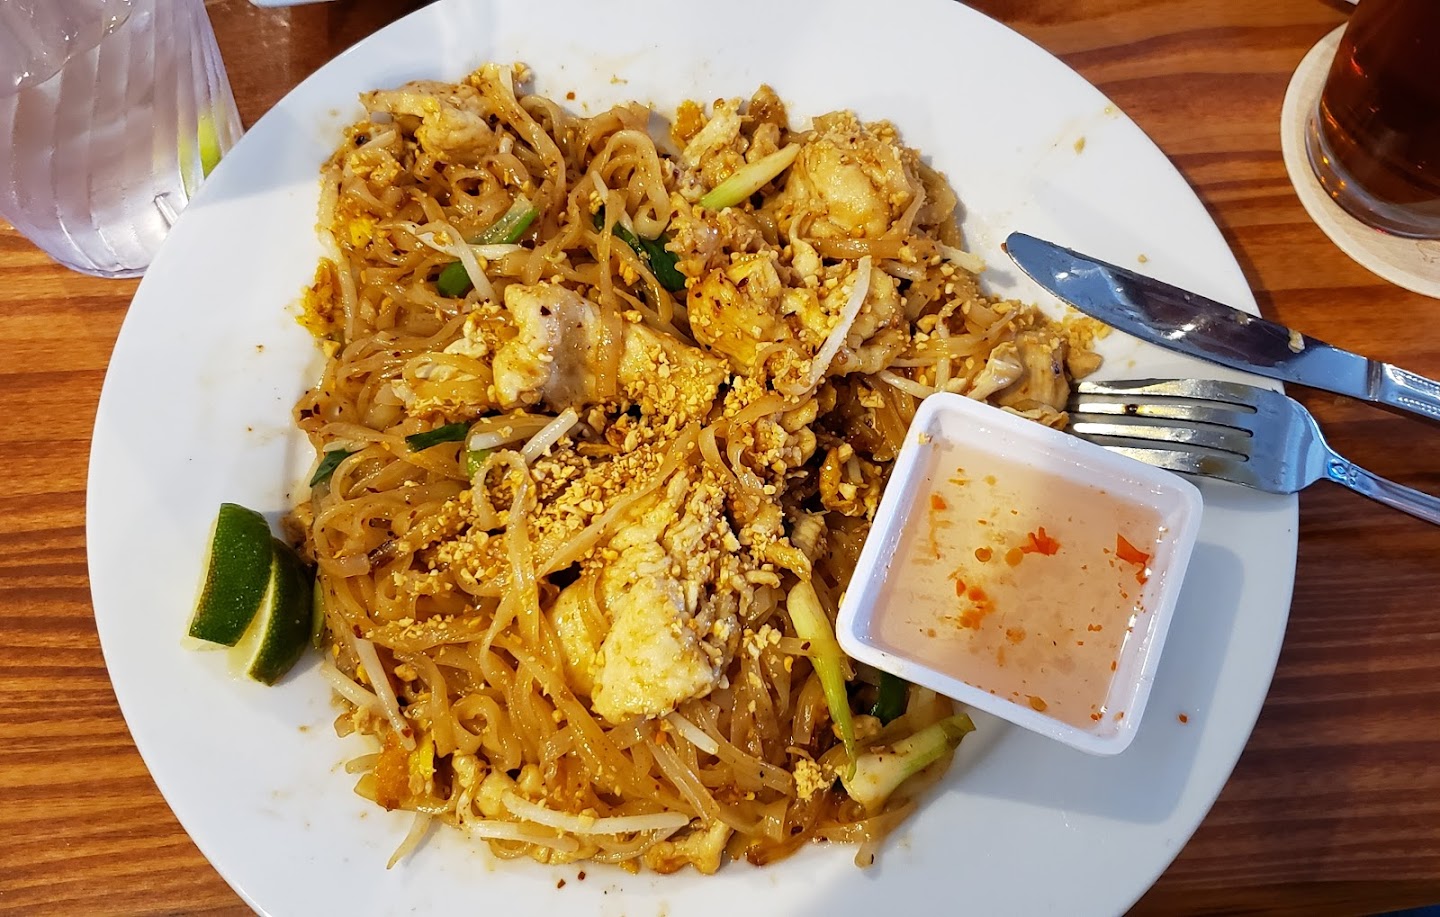 Thai Recipe Bistro